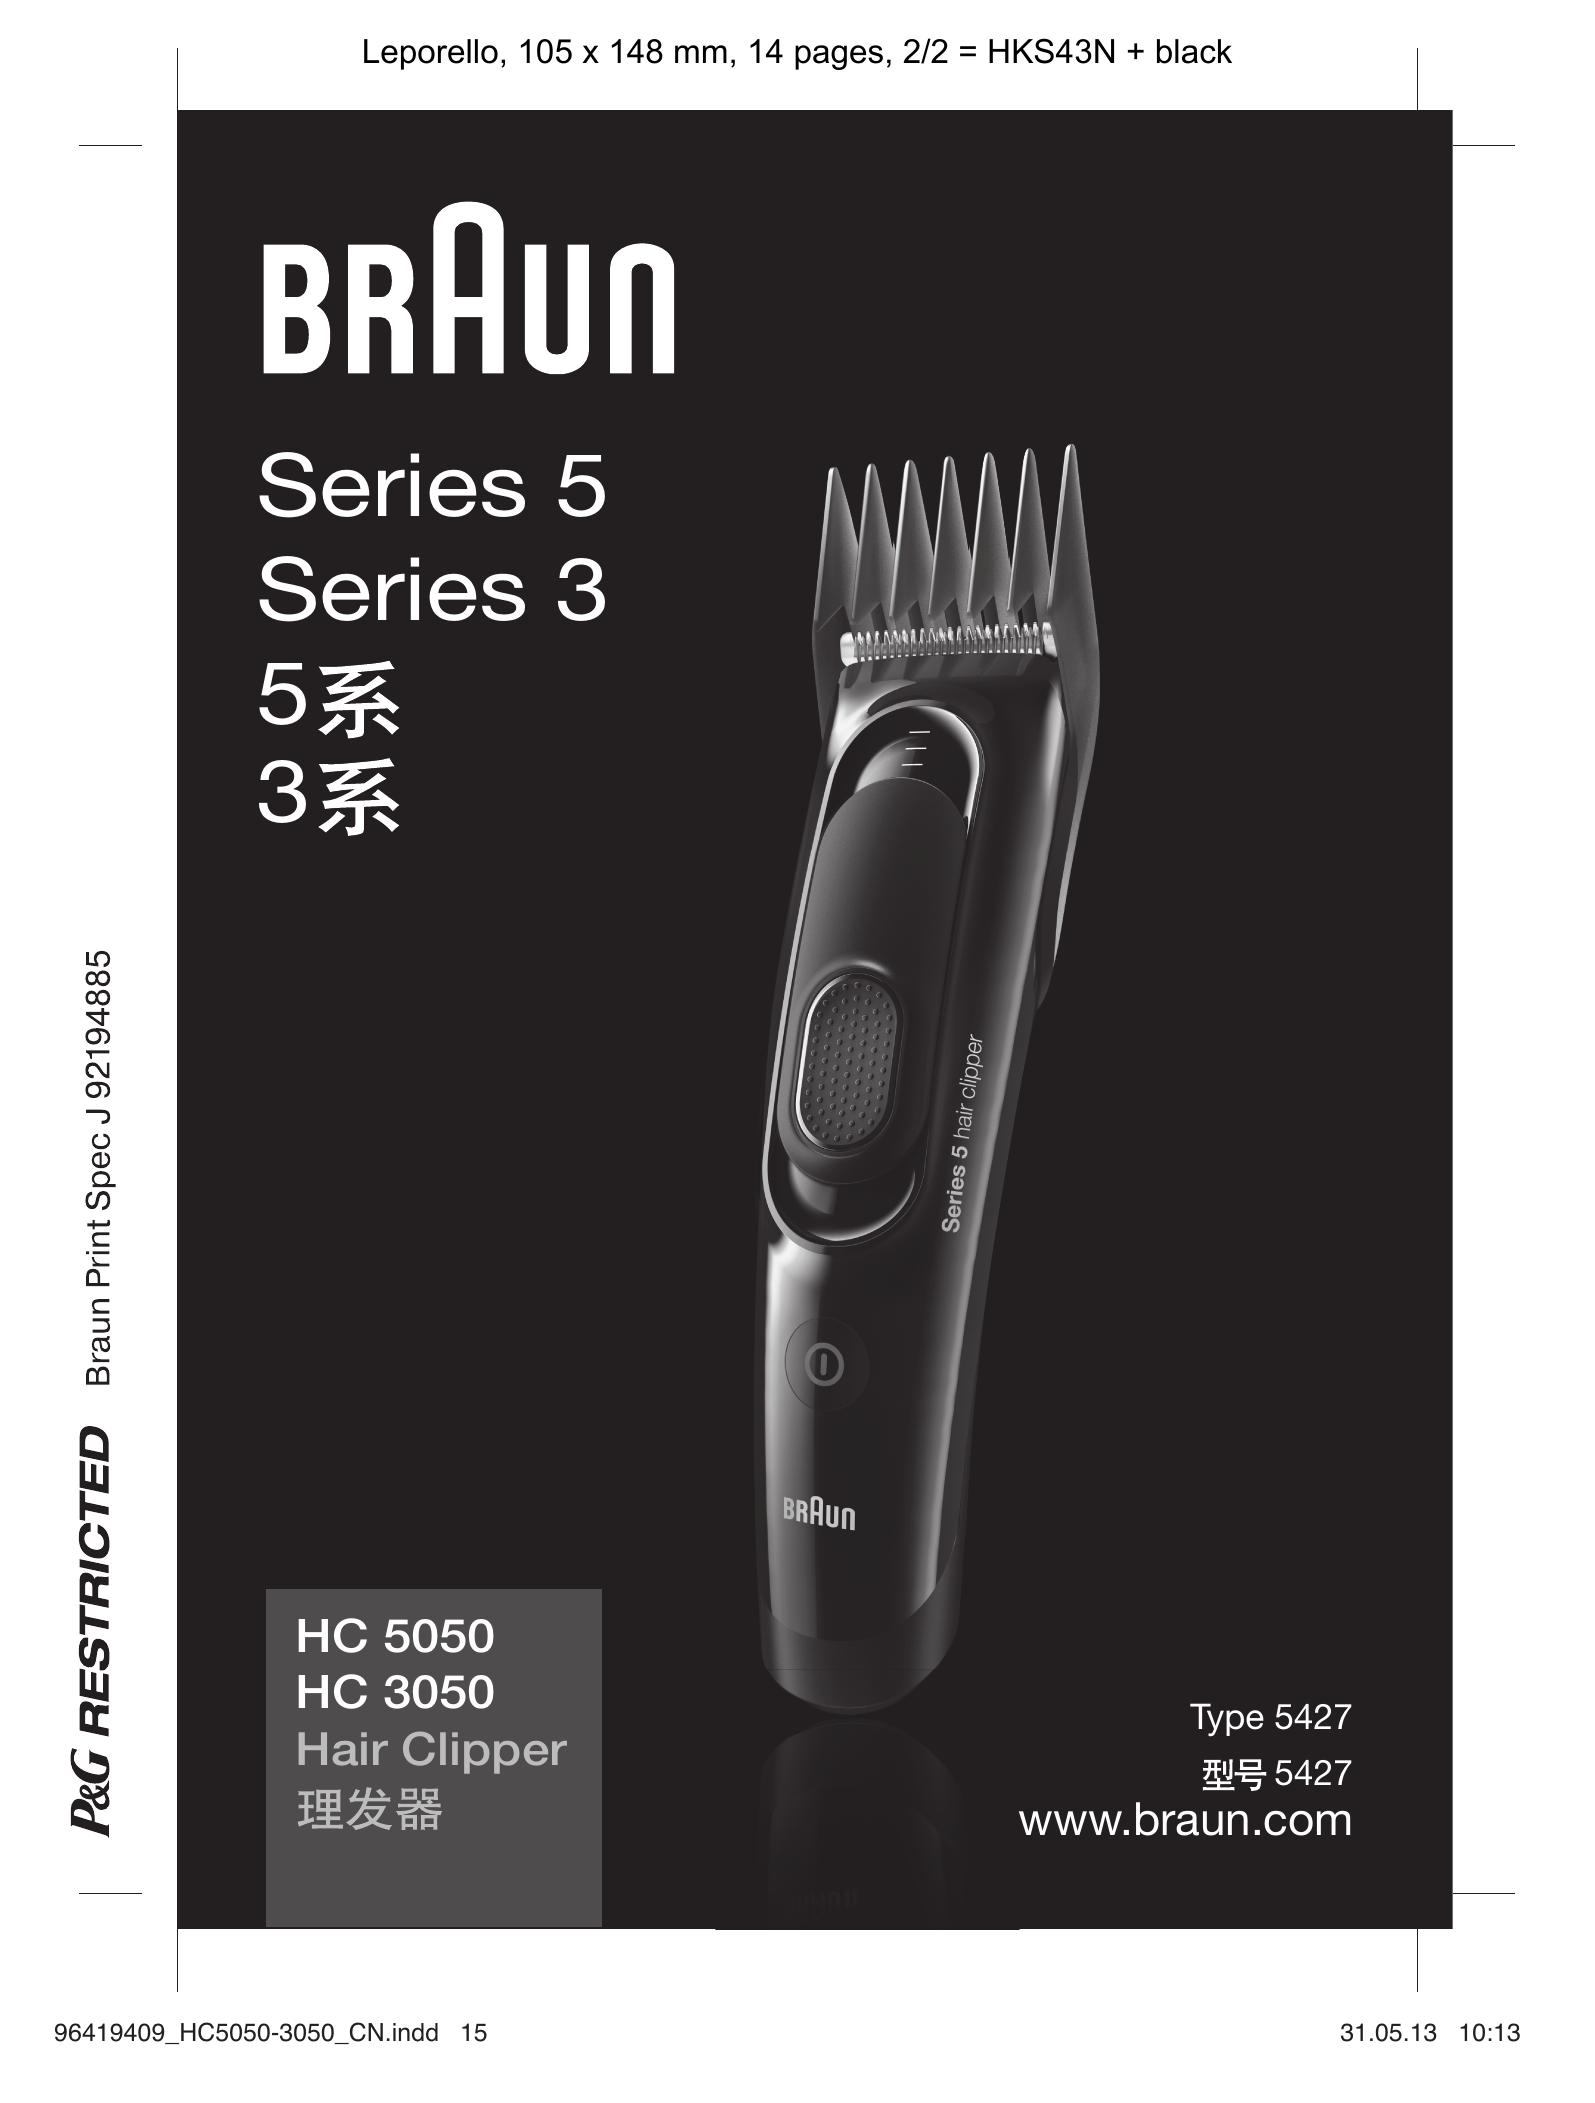 Braun HC 5050 Hair Clippers User Manual